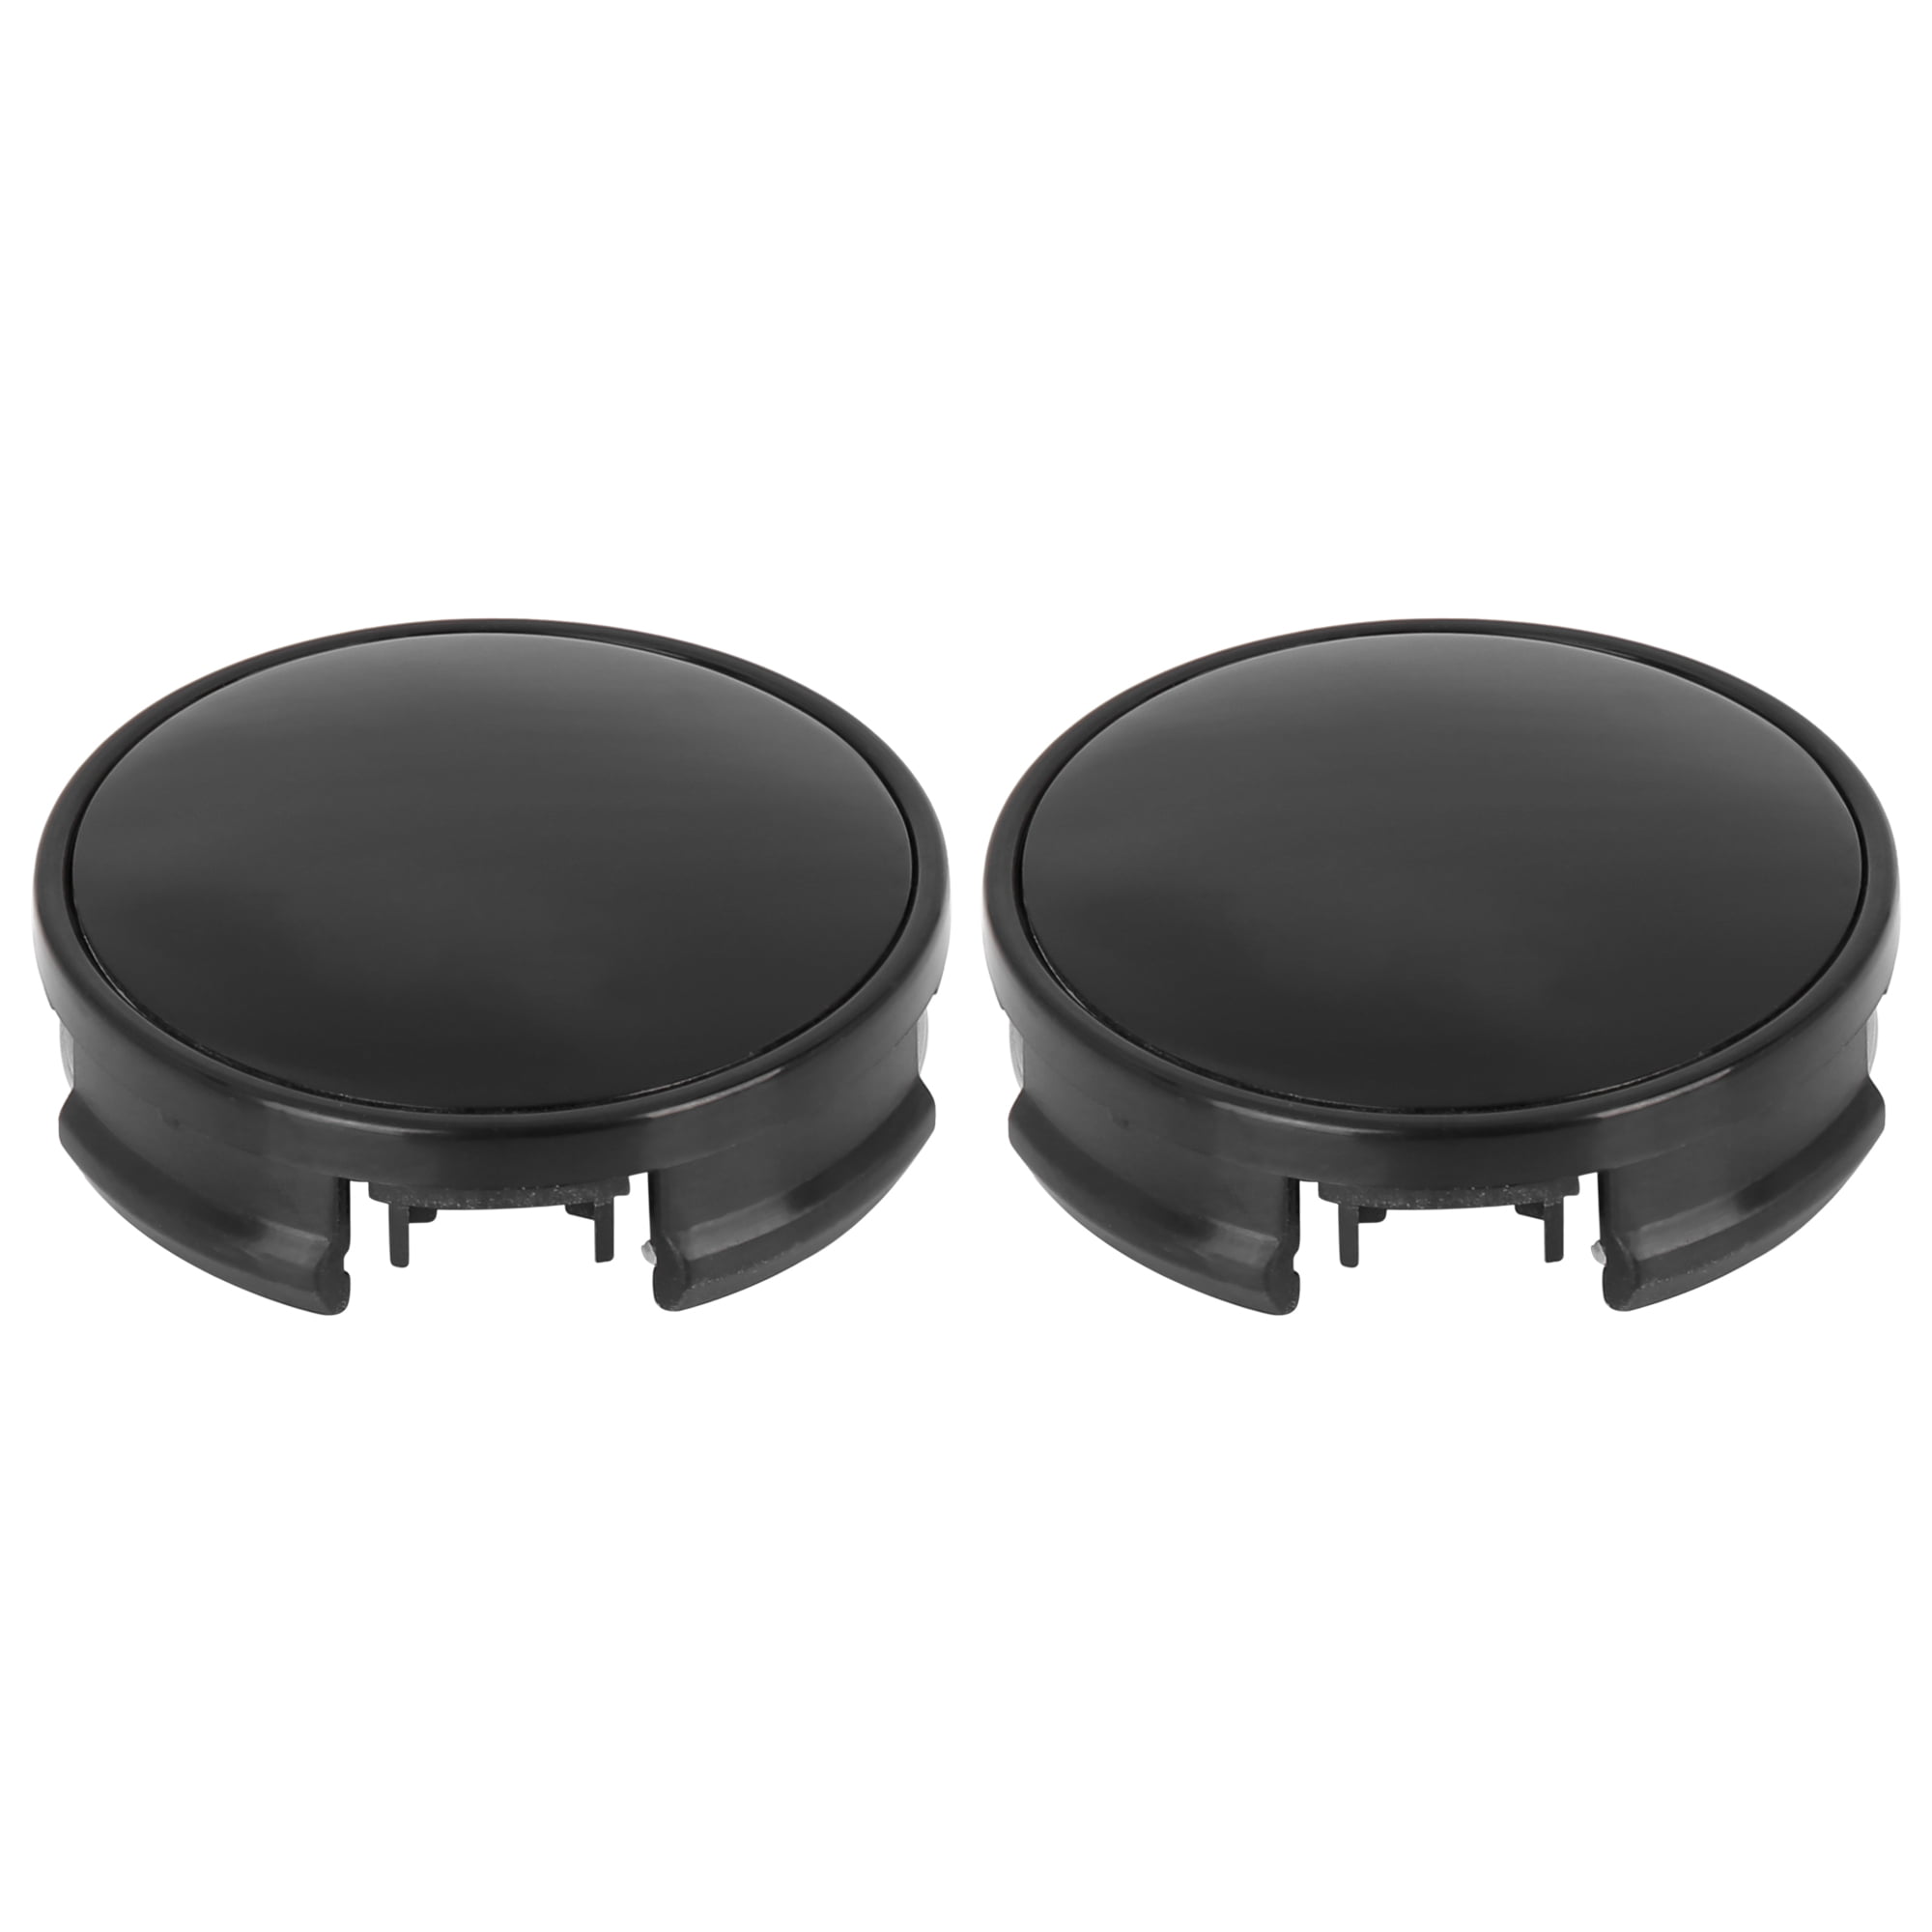 2pcs 62mm 4 Lug Car Wheel Hub Caps Universal Black with Black Plastic Sticker